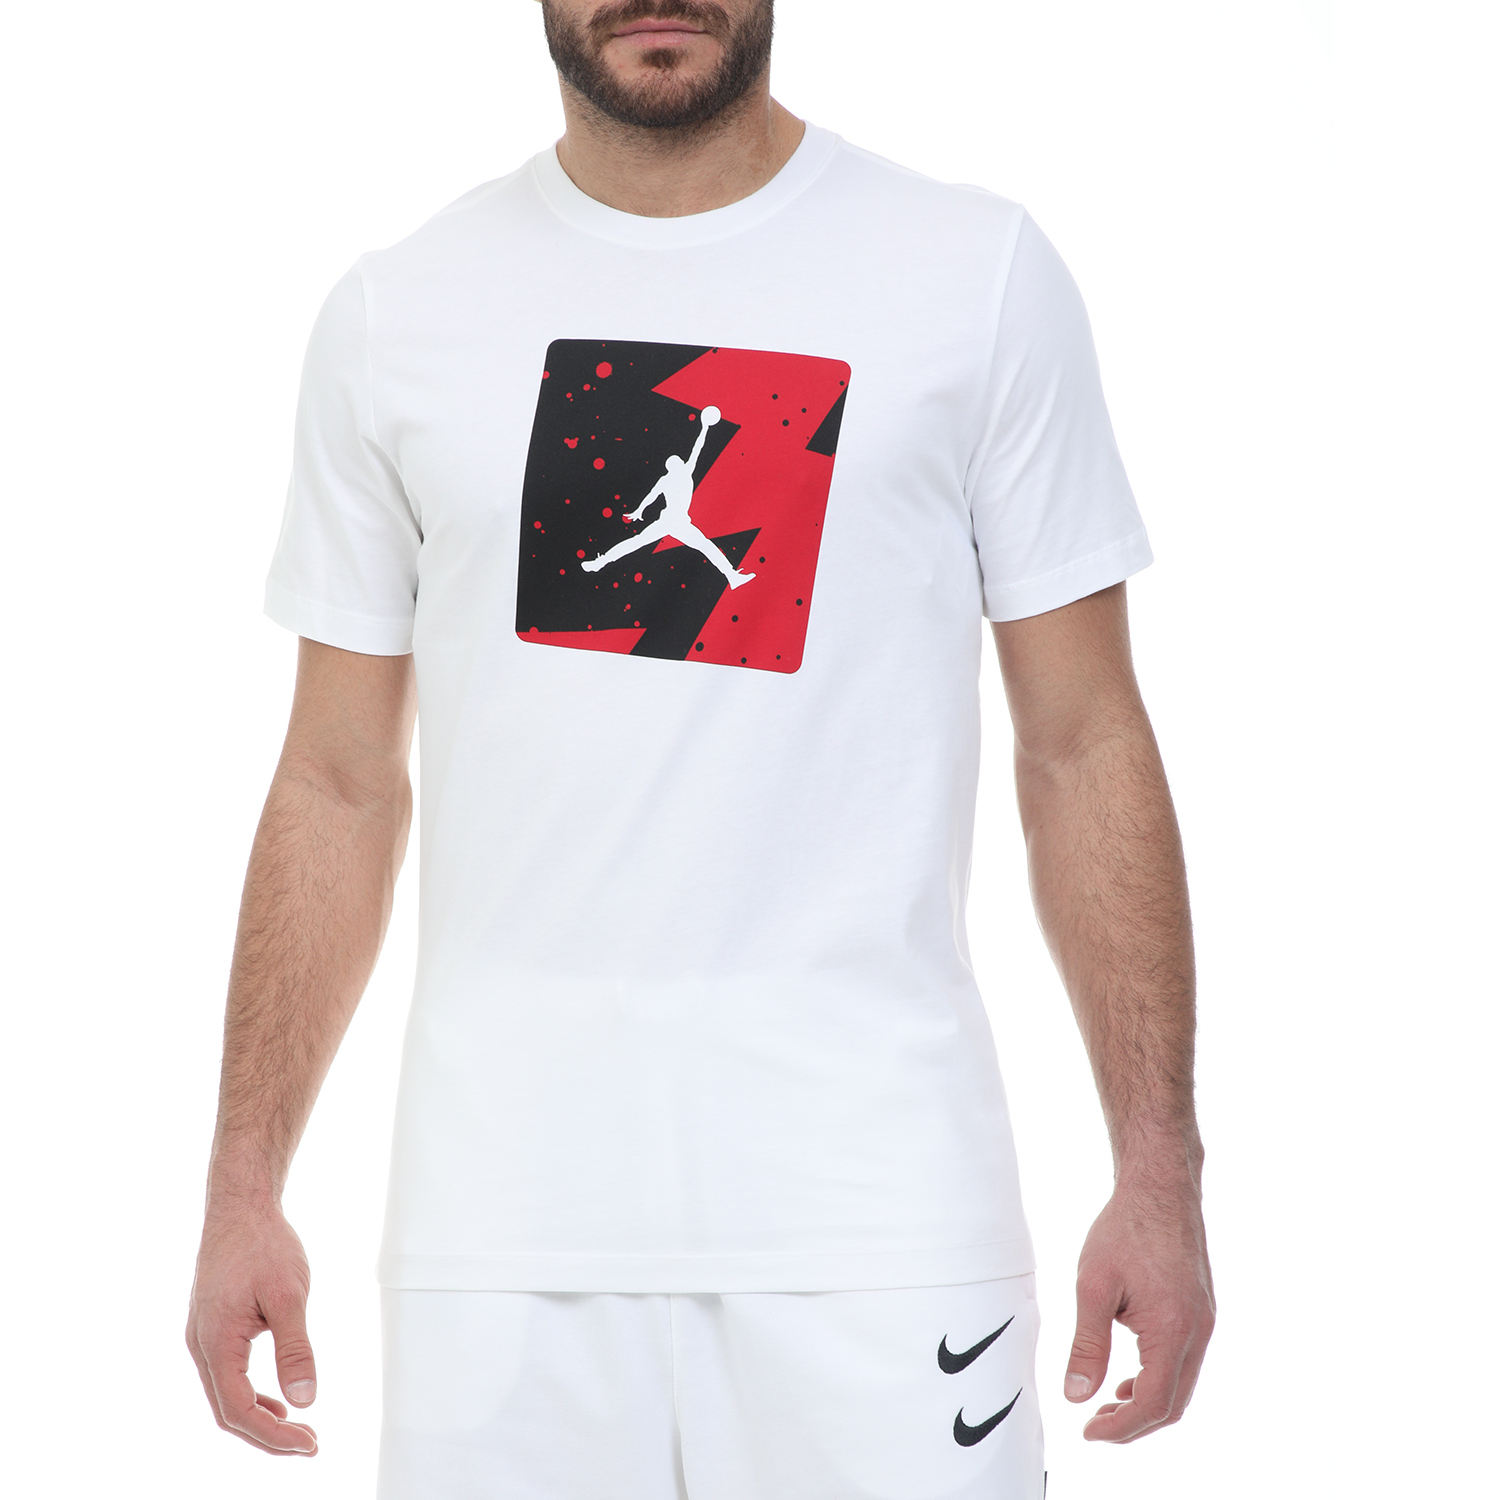 Ανδρικά/Ρούχα/Αθλητικά/T-shirt NIKE - Ανδρικό t-shirt NIKE M J POOLSIDE CREW λευκό